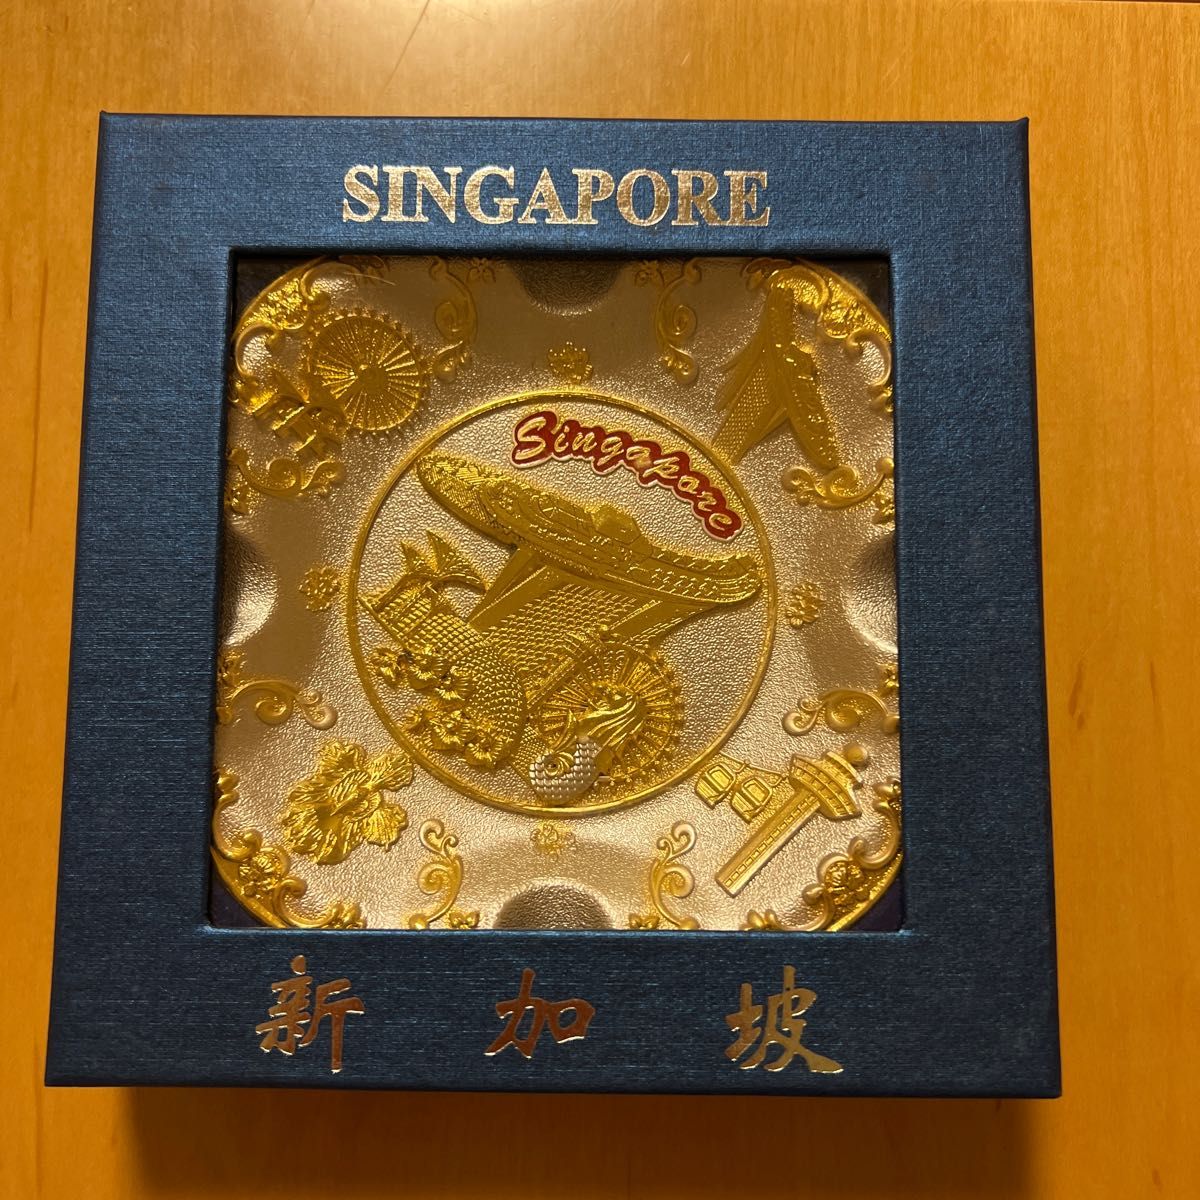 ミニ灰皿 シンガポール - 喫煙具・ライター